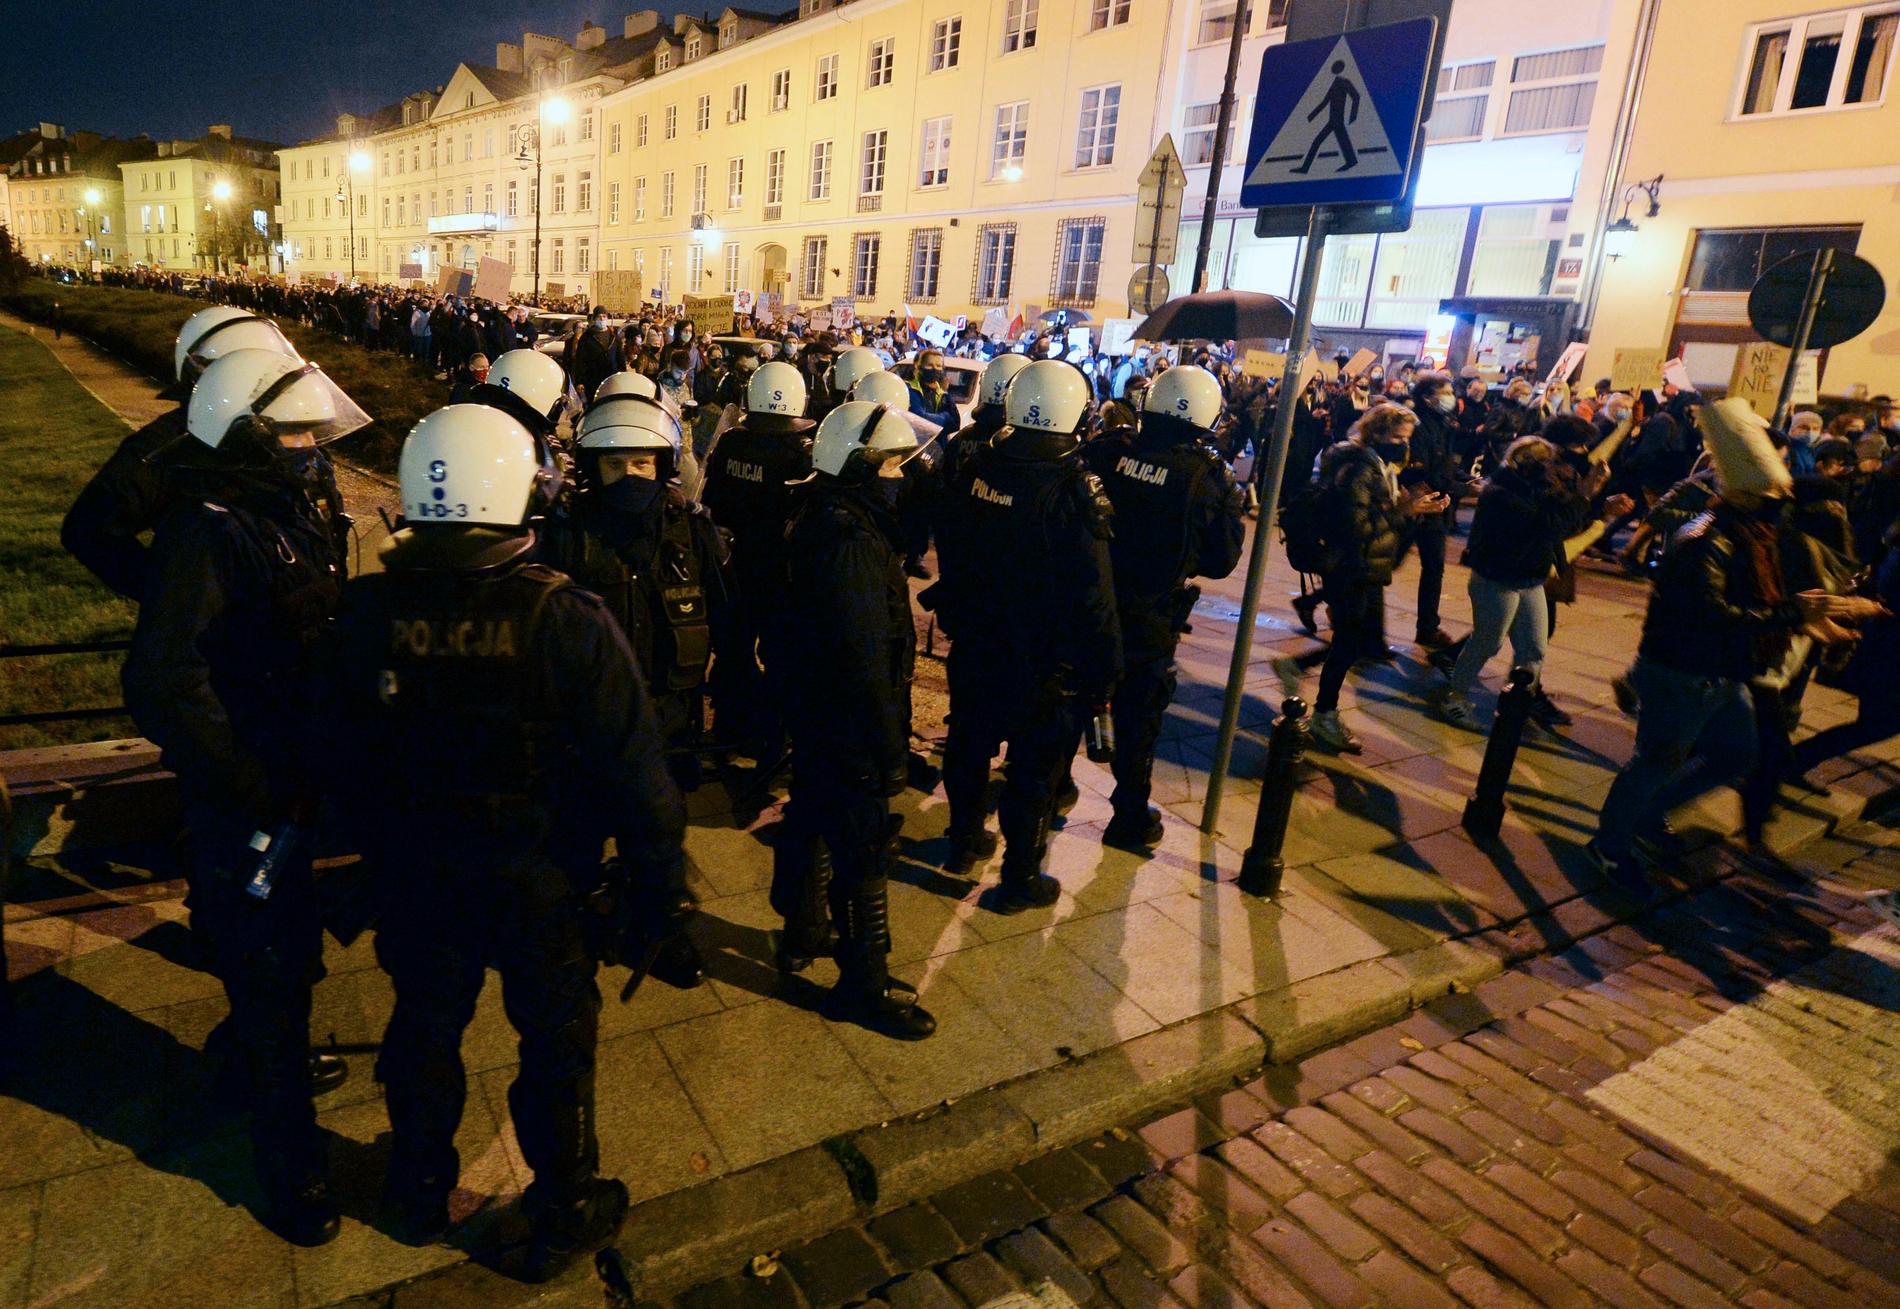 Massdemonstrationen i Warszawa hölls under sträng polisbevakning.